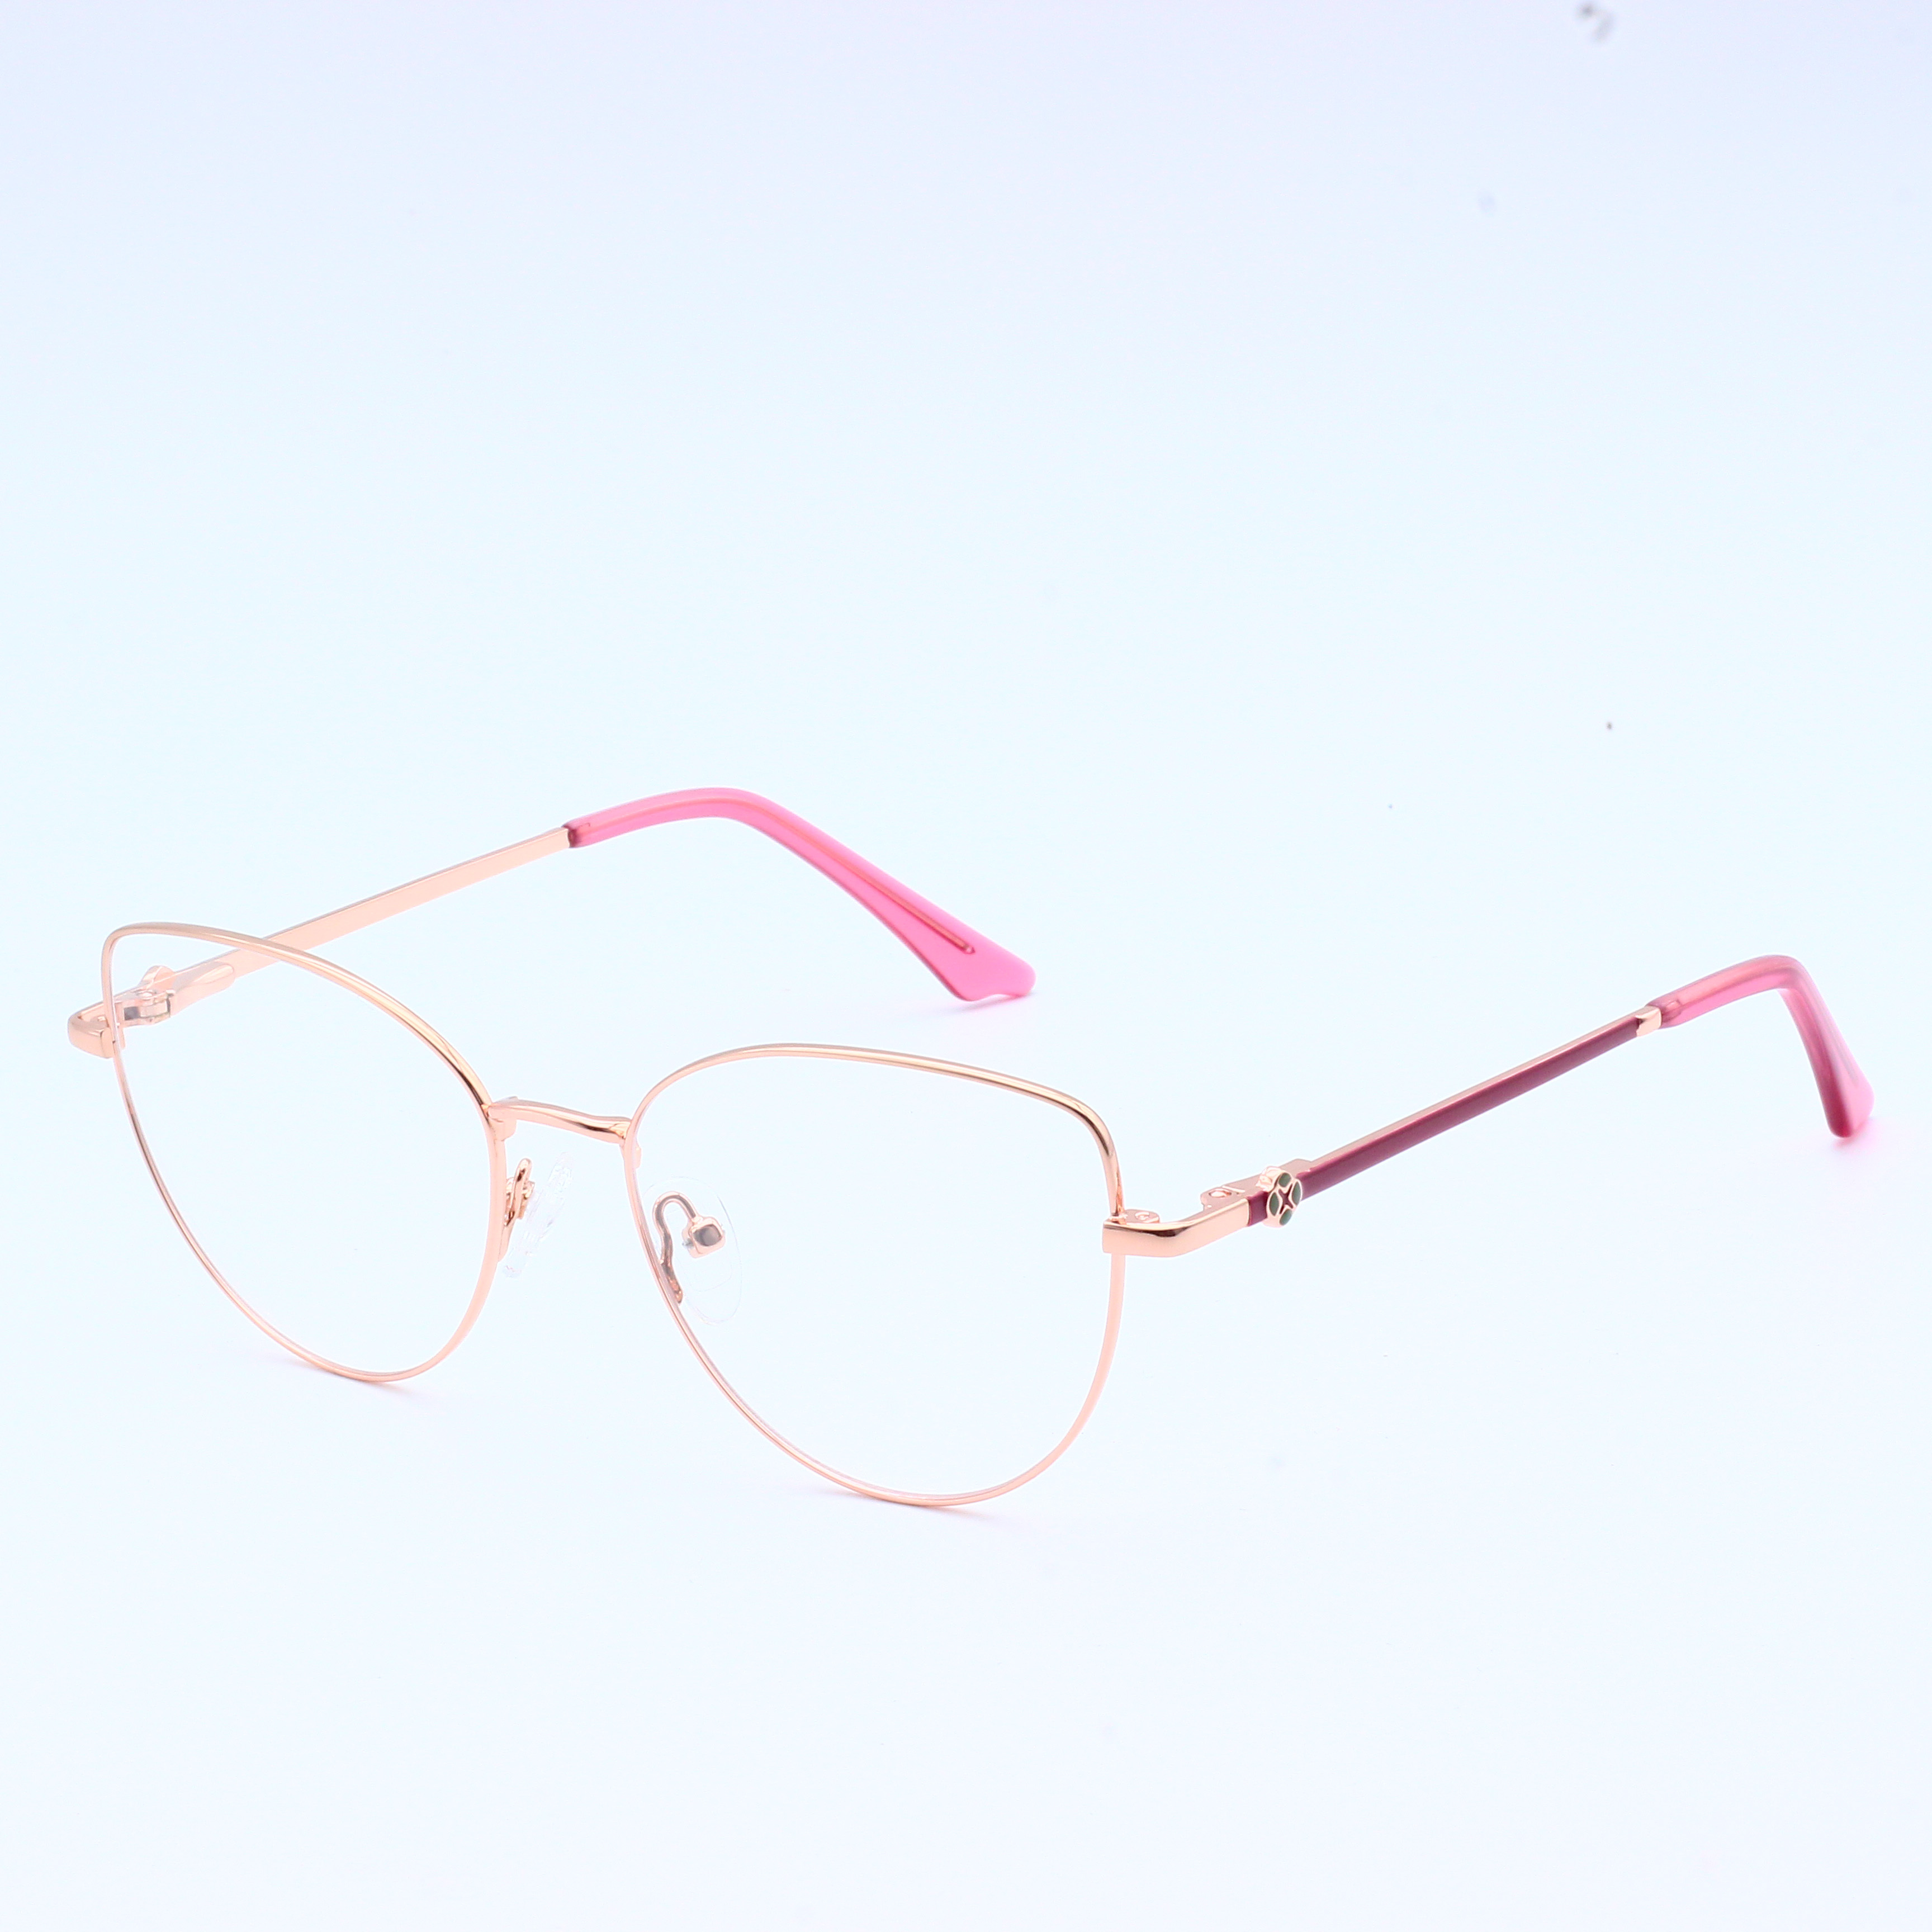 चश्मे का फ्रेम धातु का चश्मा कांच का फ्रेम (8)